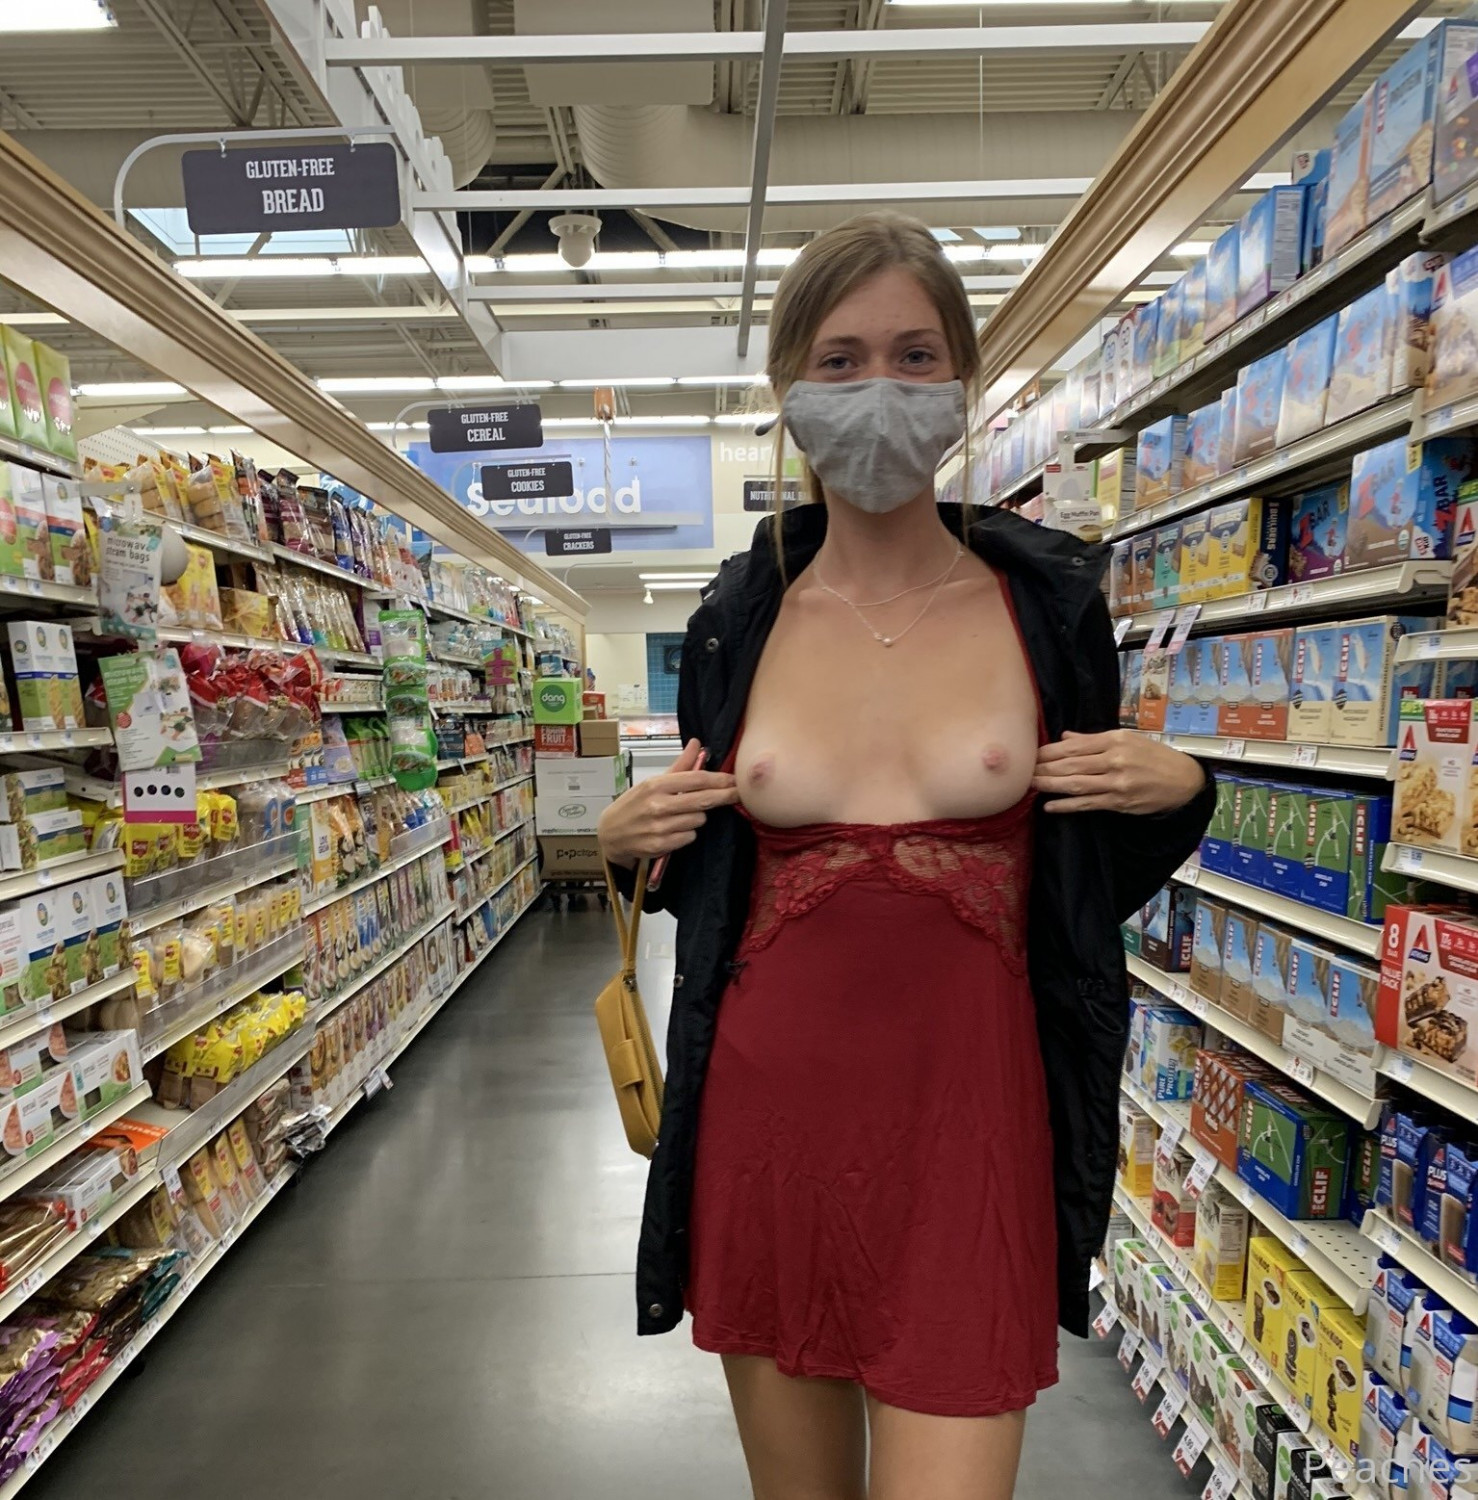 Pornstar in supermarket - Porn Videos & Photos - EroMe